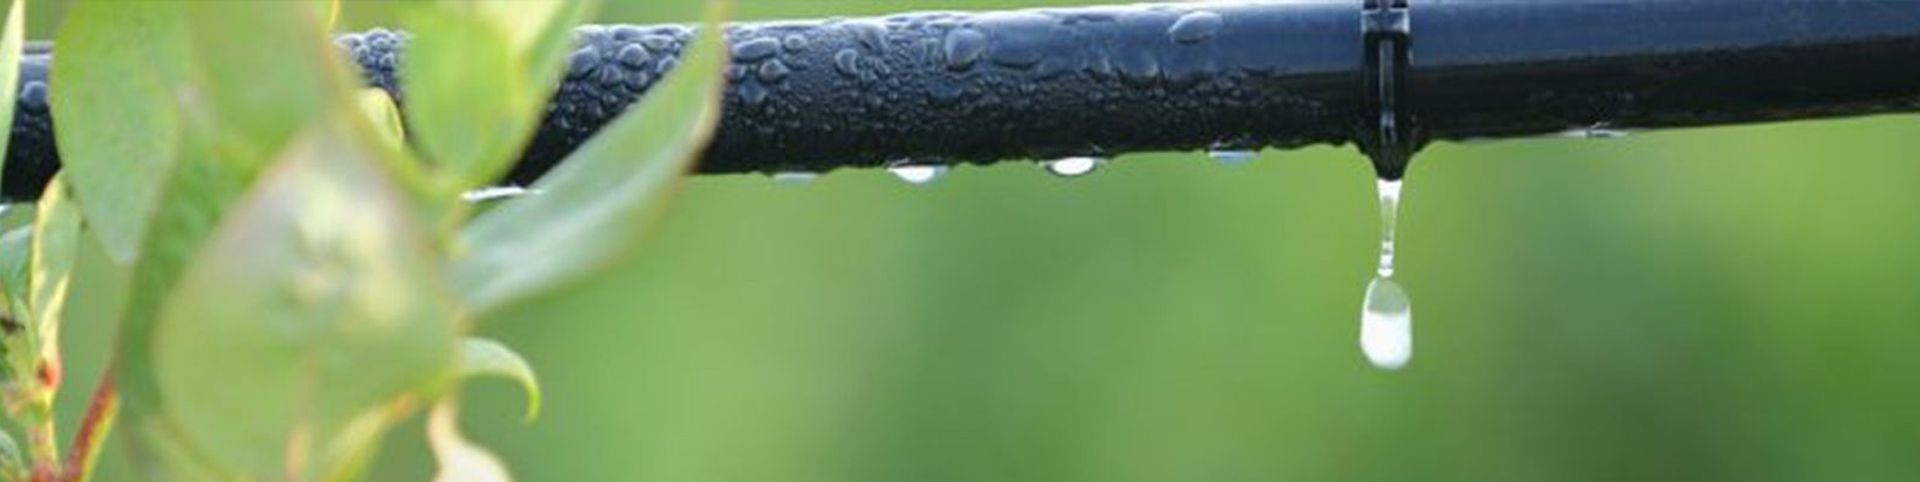 Sistema de reg goteig - estalvi aigua